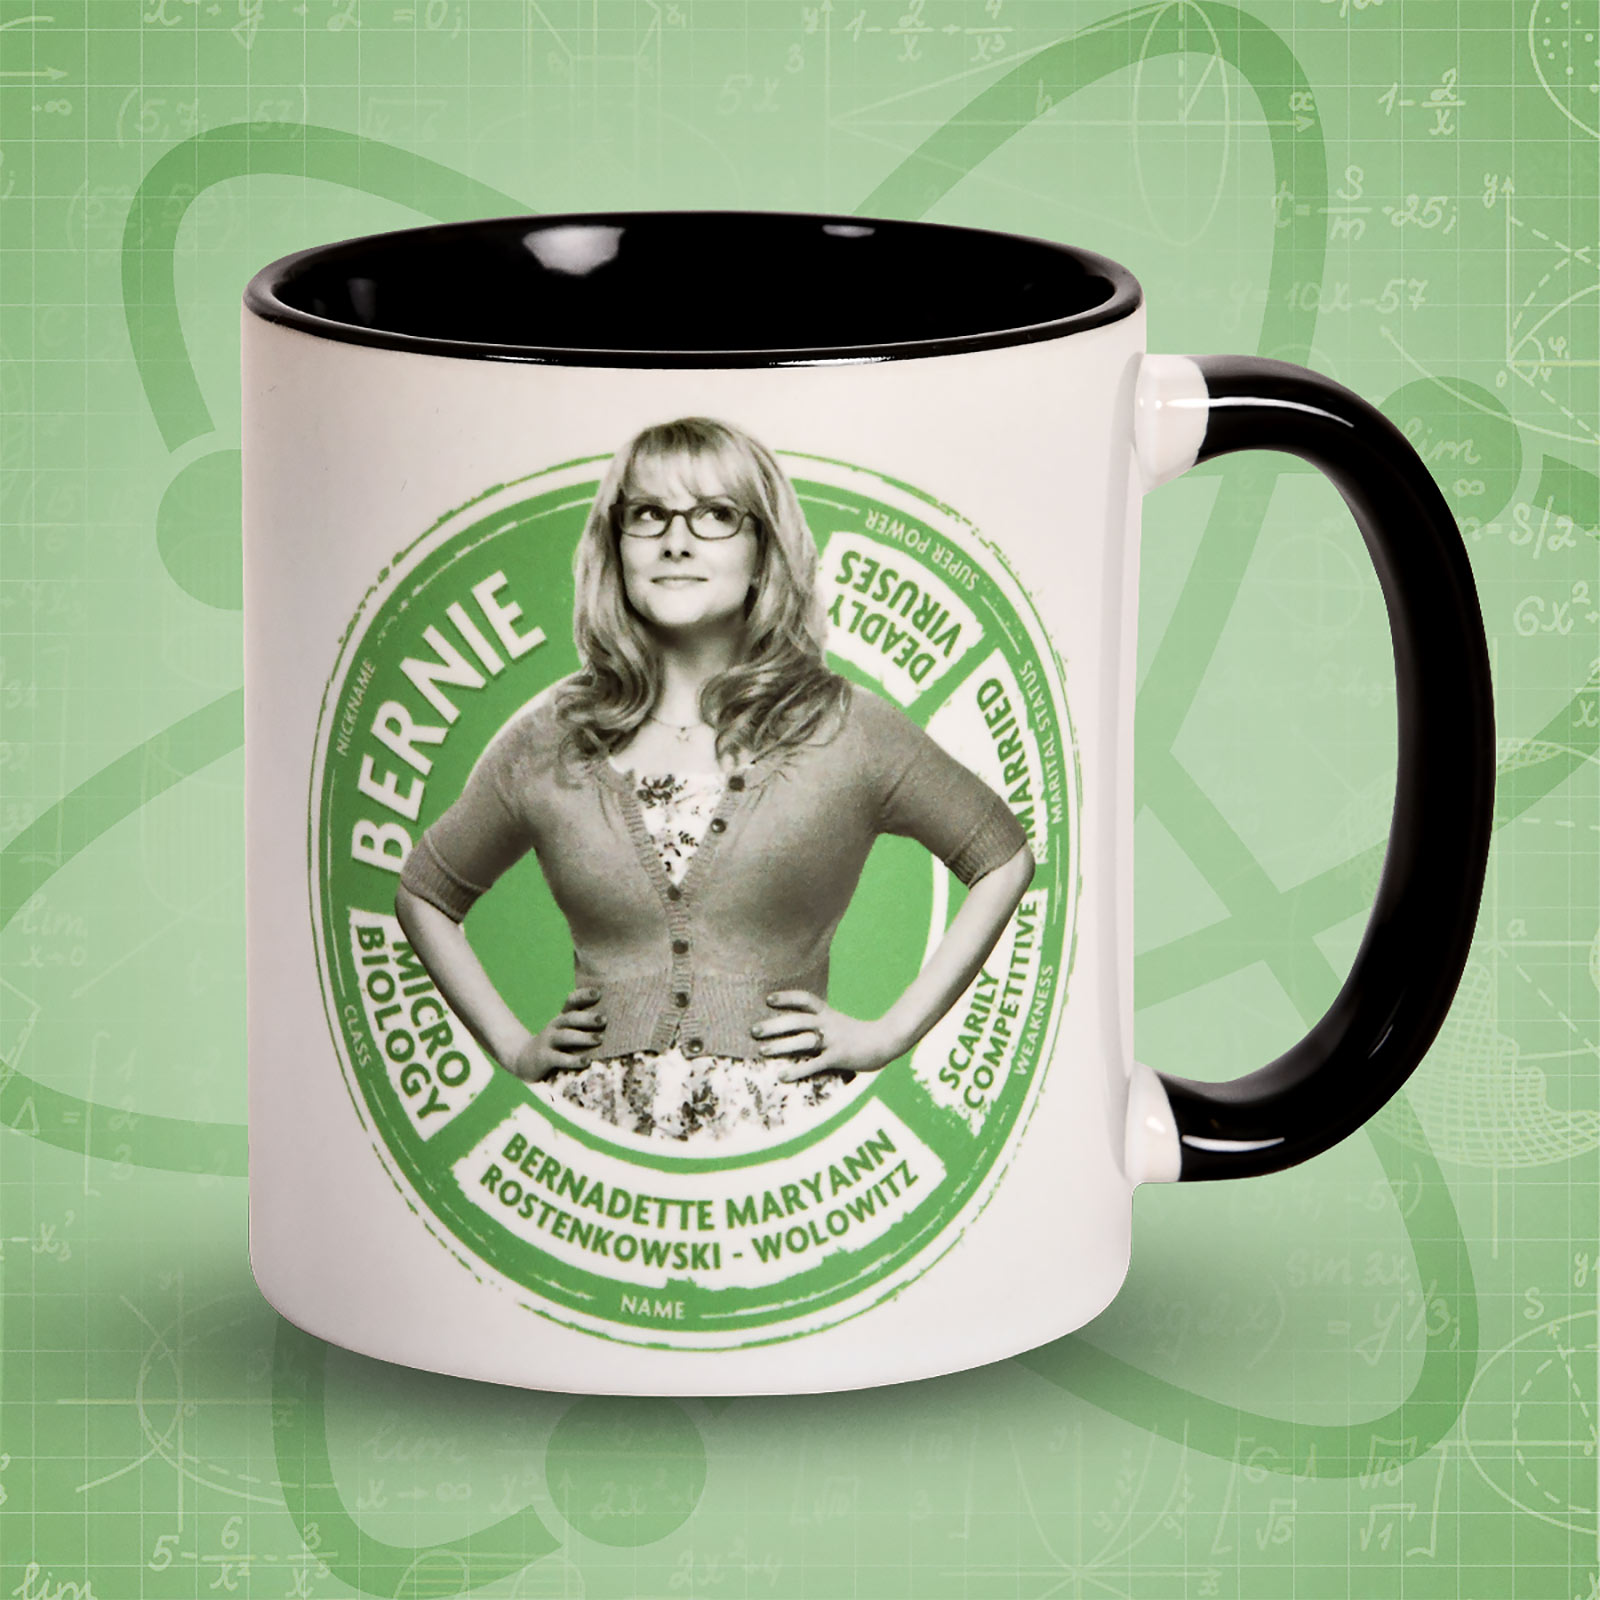 Bernadette Character Mug - The Big Bang Theory